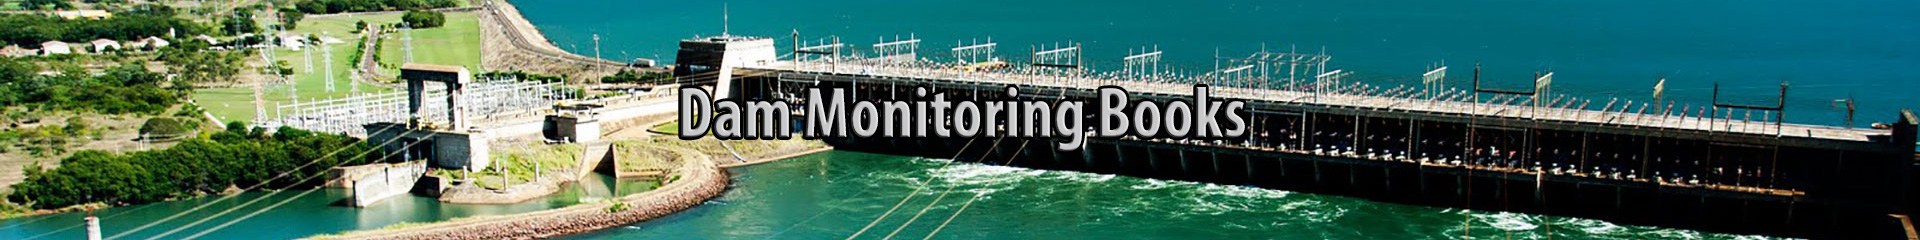 dam monitoring books